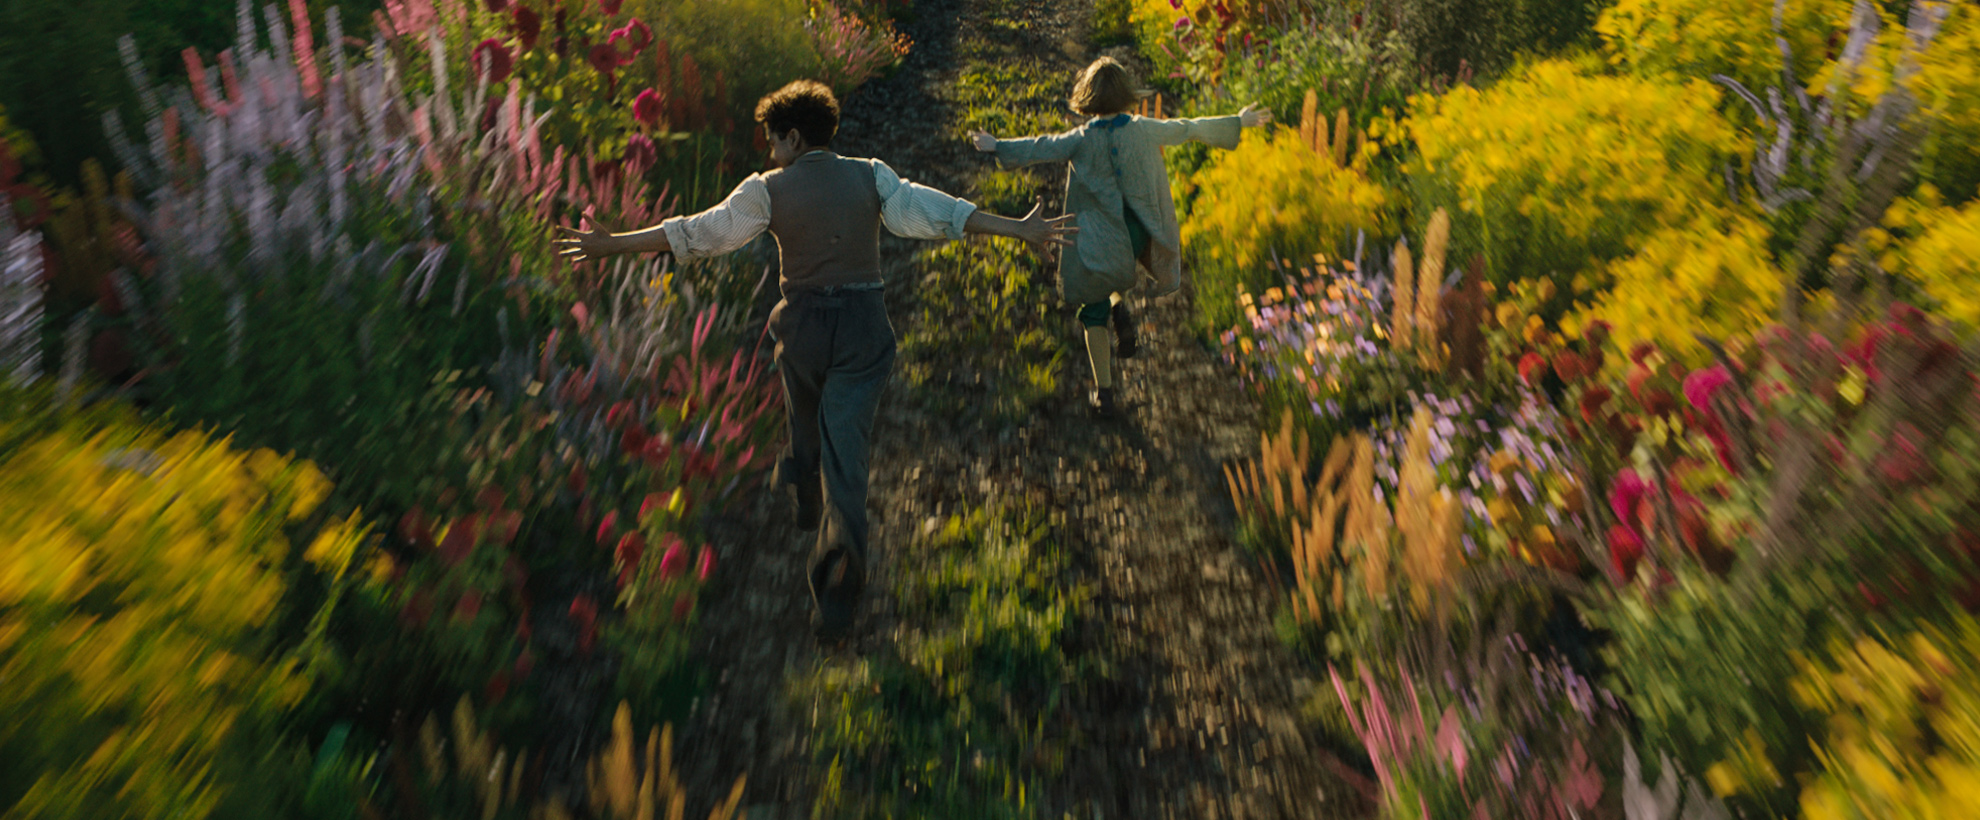 Two children run through a flowering garden